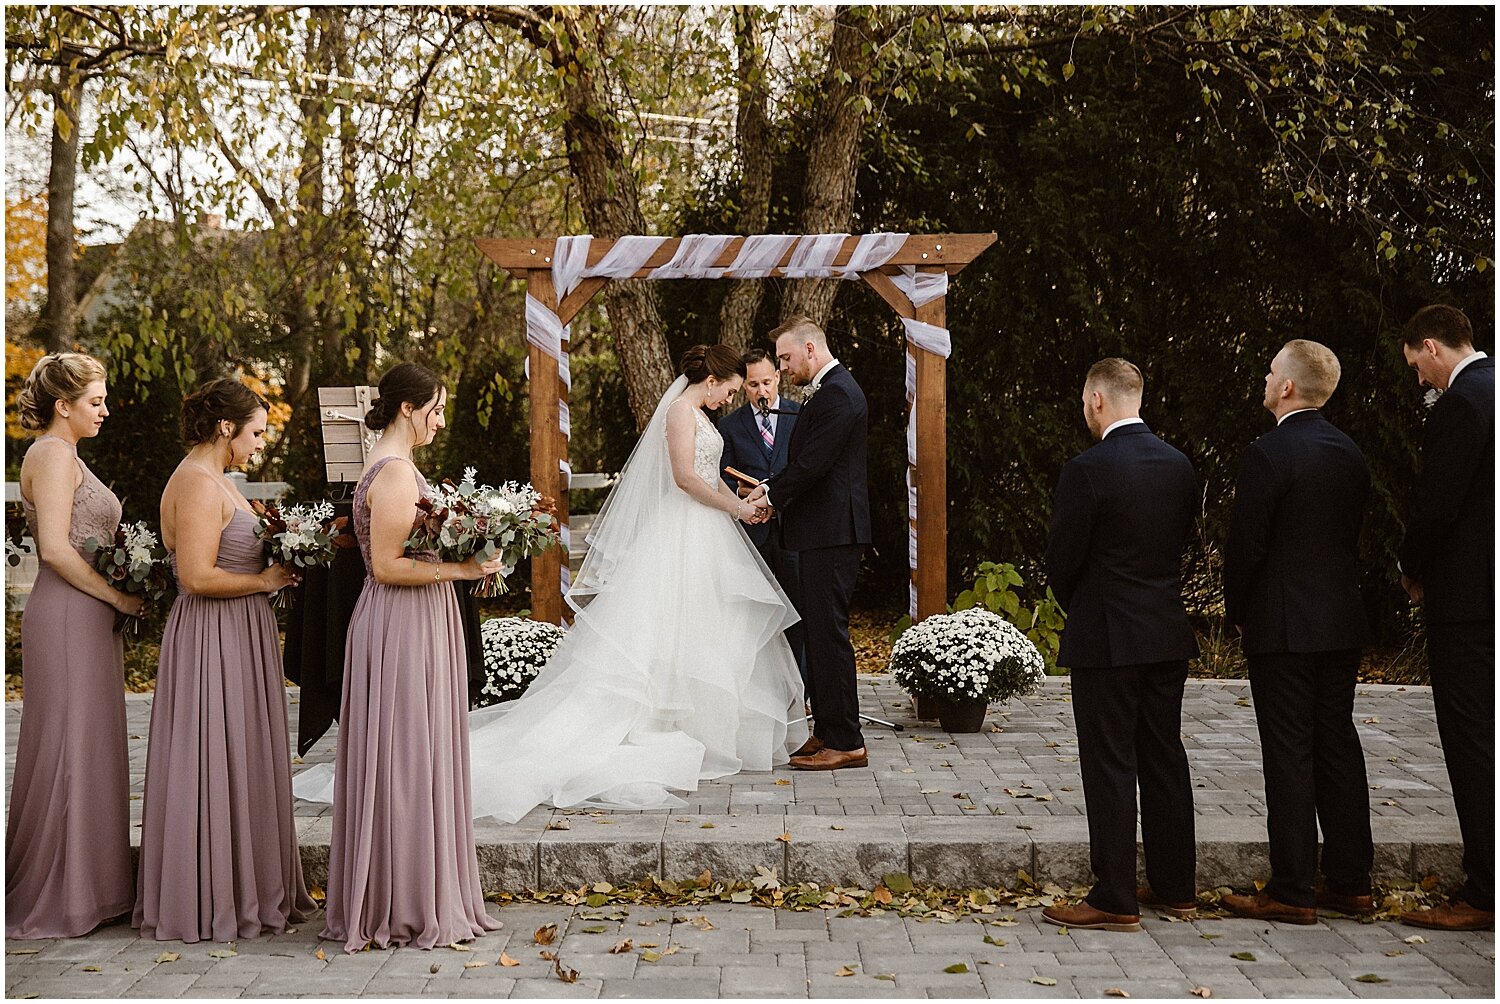  outdoor wedding ceremony in minnesota 